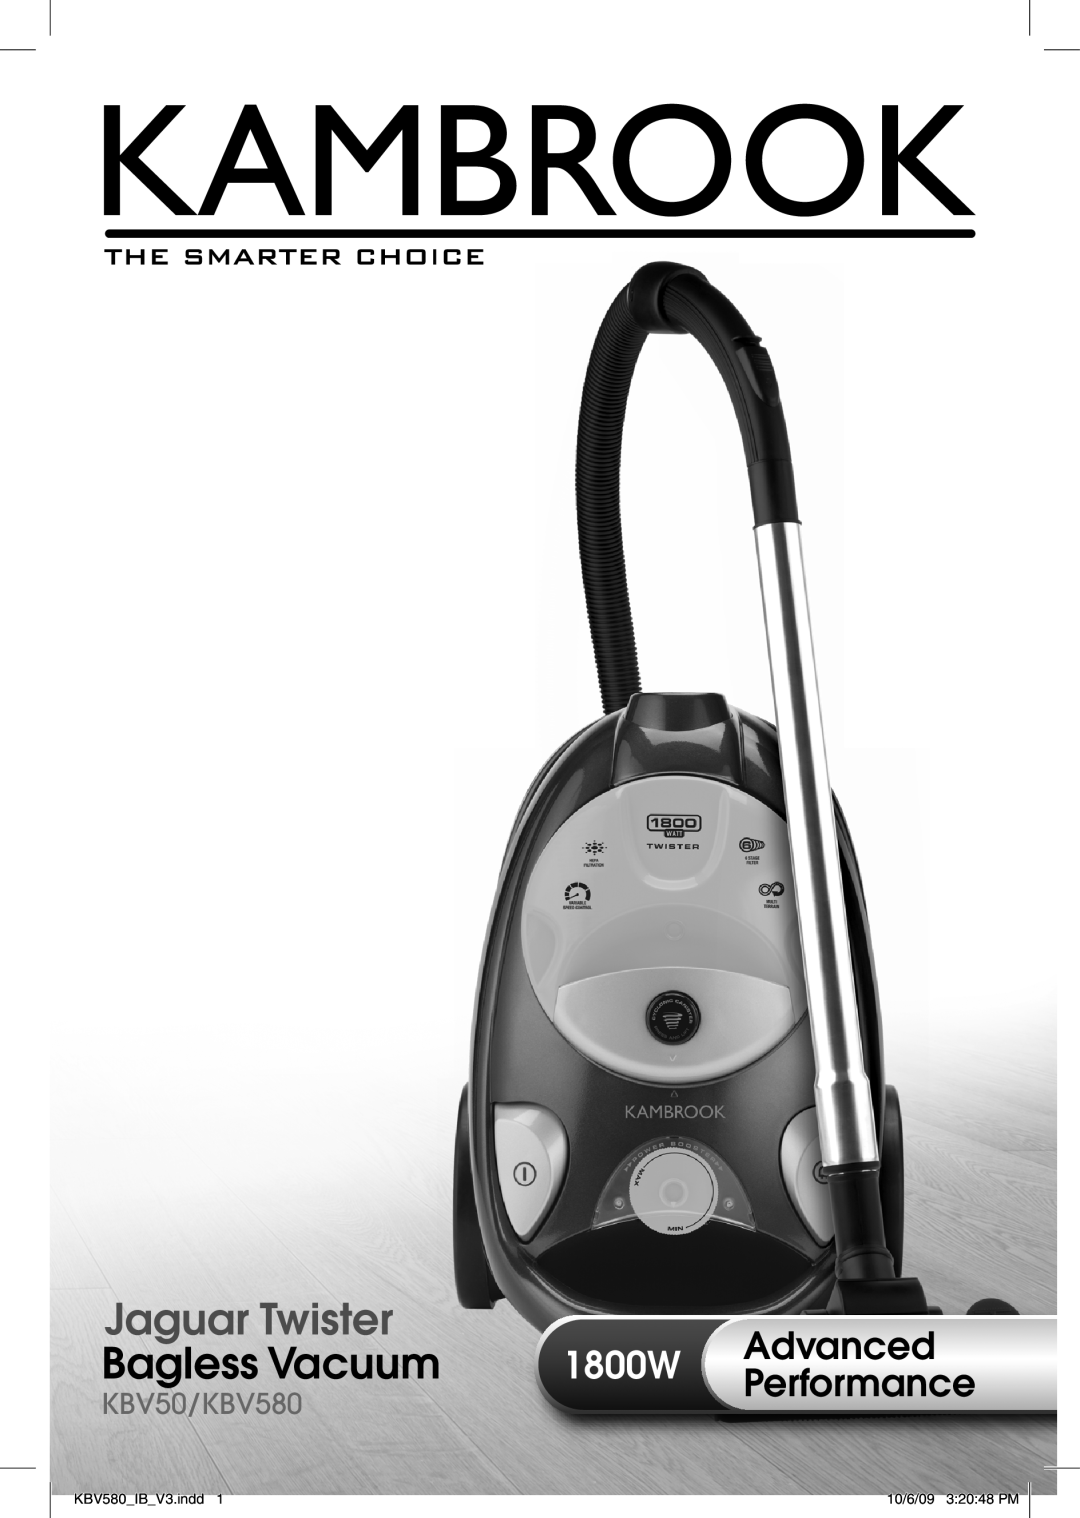 Kambrook manual Jaguar Twister Bagless Vacuum Cleaner, Issue 1/07, KBV50.indd, 9/5/07 11 42 15 AM 